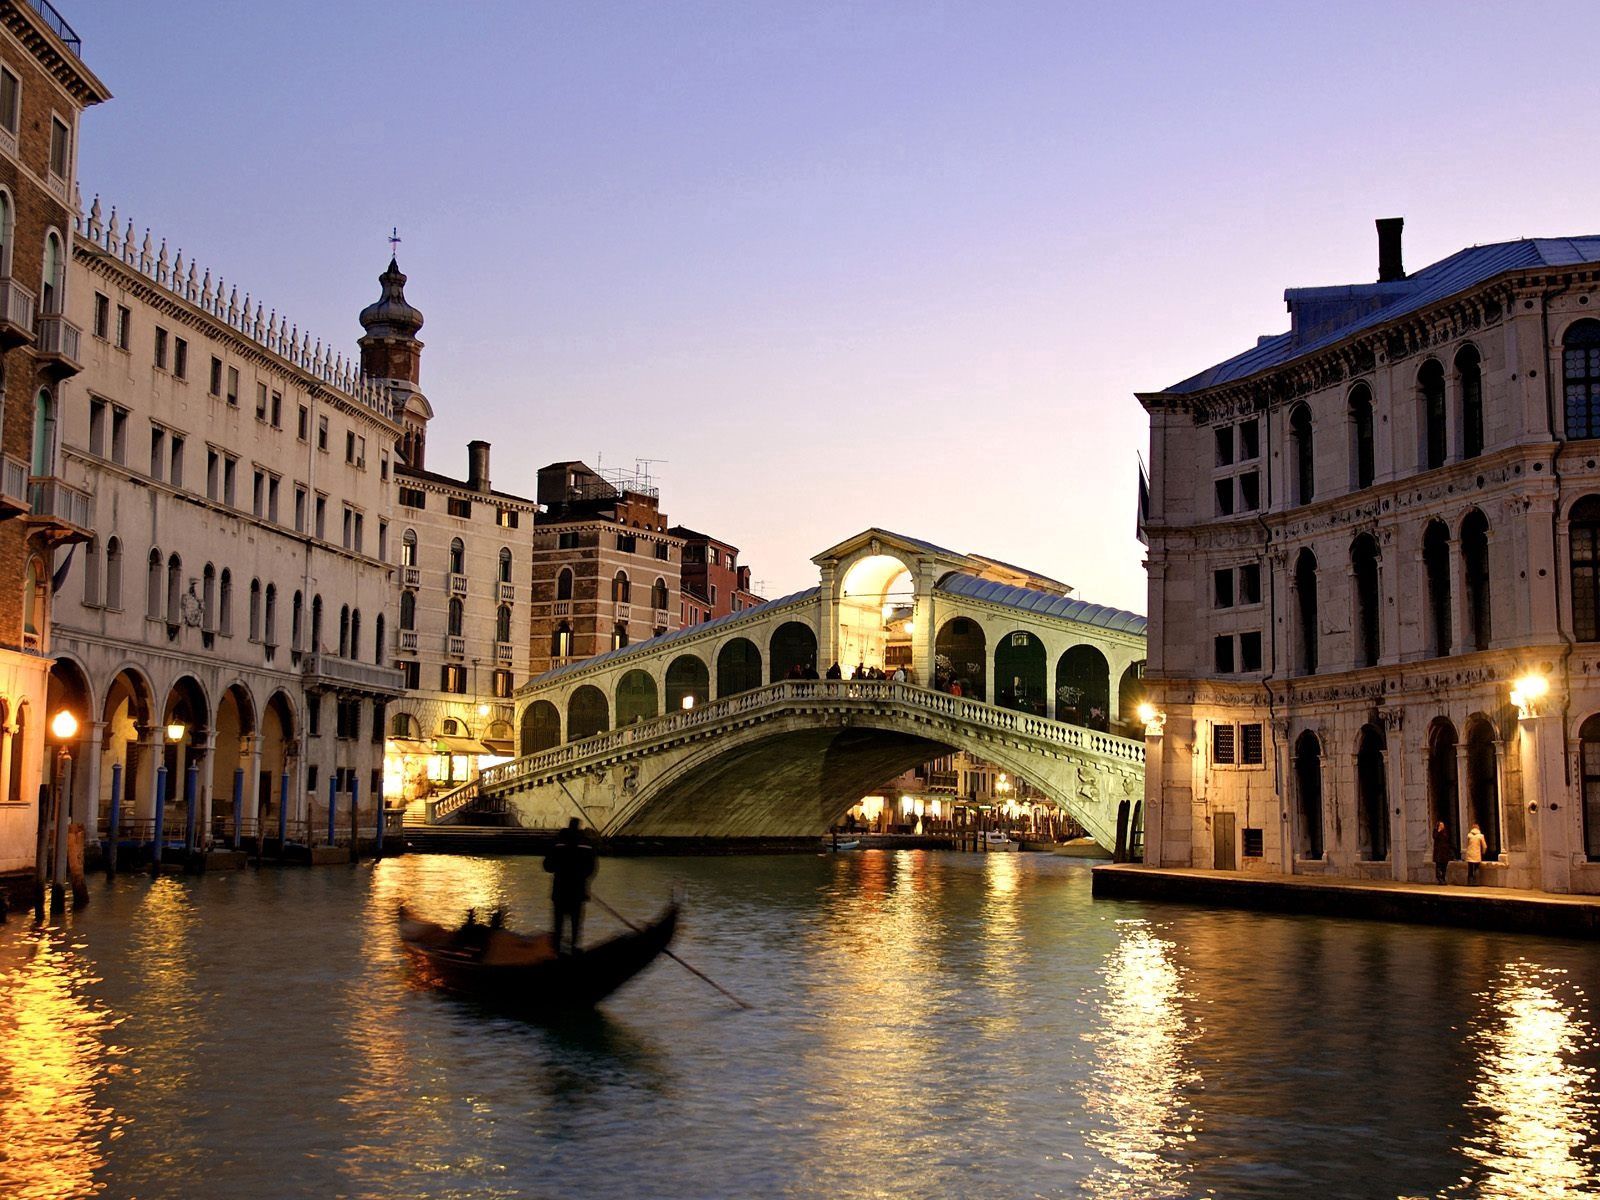 Скачать обои бесплатно Венеция, Италия, Мост, Здания, Вечер, Лодка, Города, Река картинка на рабочий стол ПК